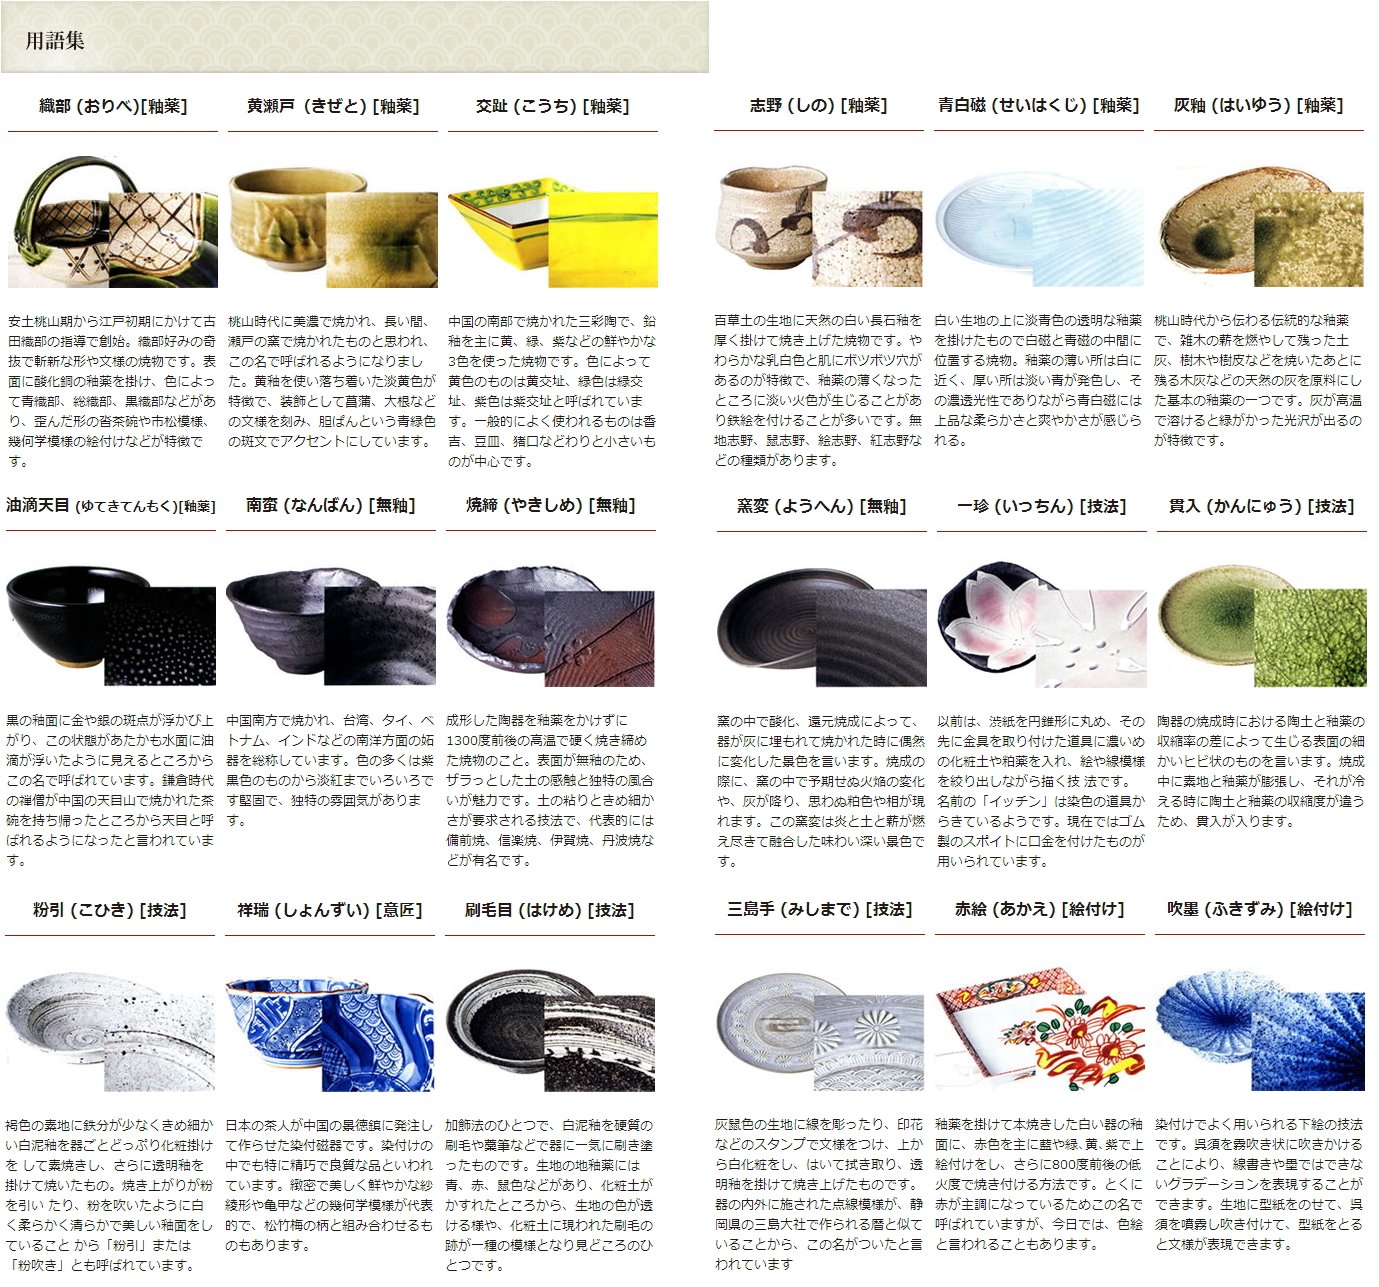 せともの本舗 Aluminum Product, Tagine Pot, Extra Large (Kyoto American Glaze), Fluorine φ12.6 inches (32 cm), 12.6 x 8.3 inches (32 x 21 cm), 10.6 fl oz (3,000